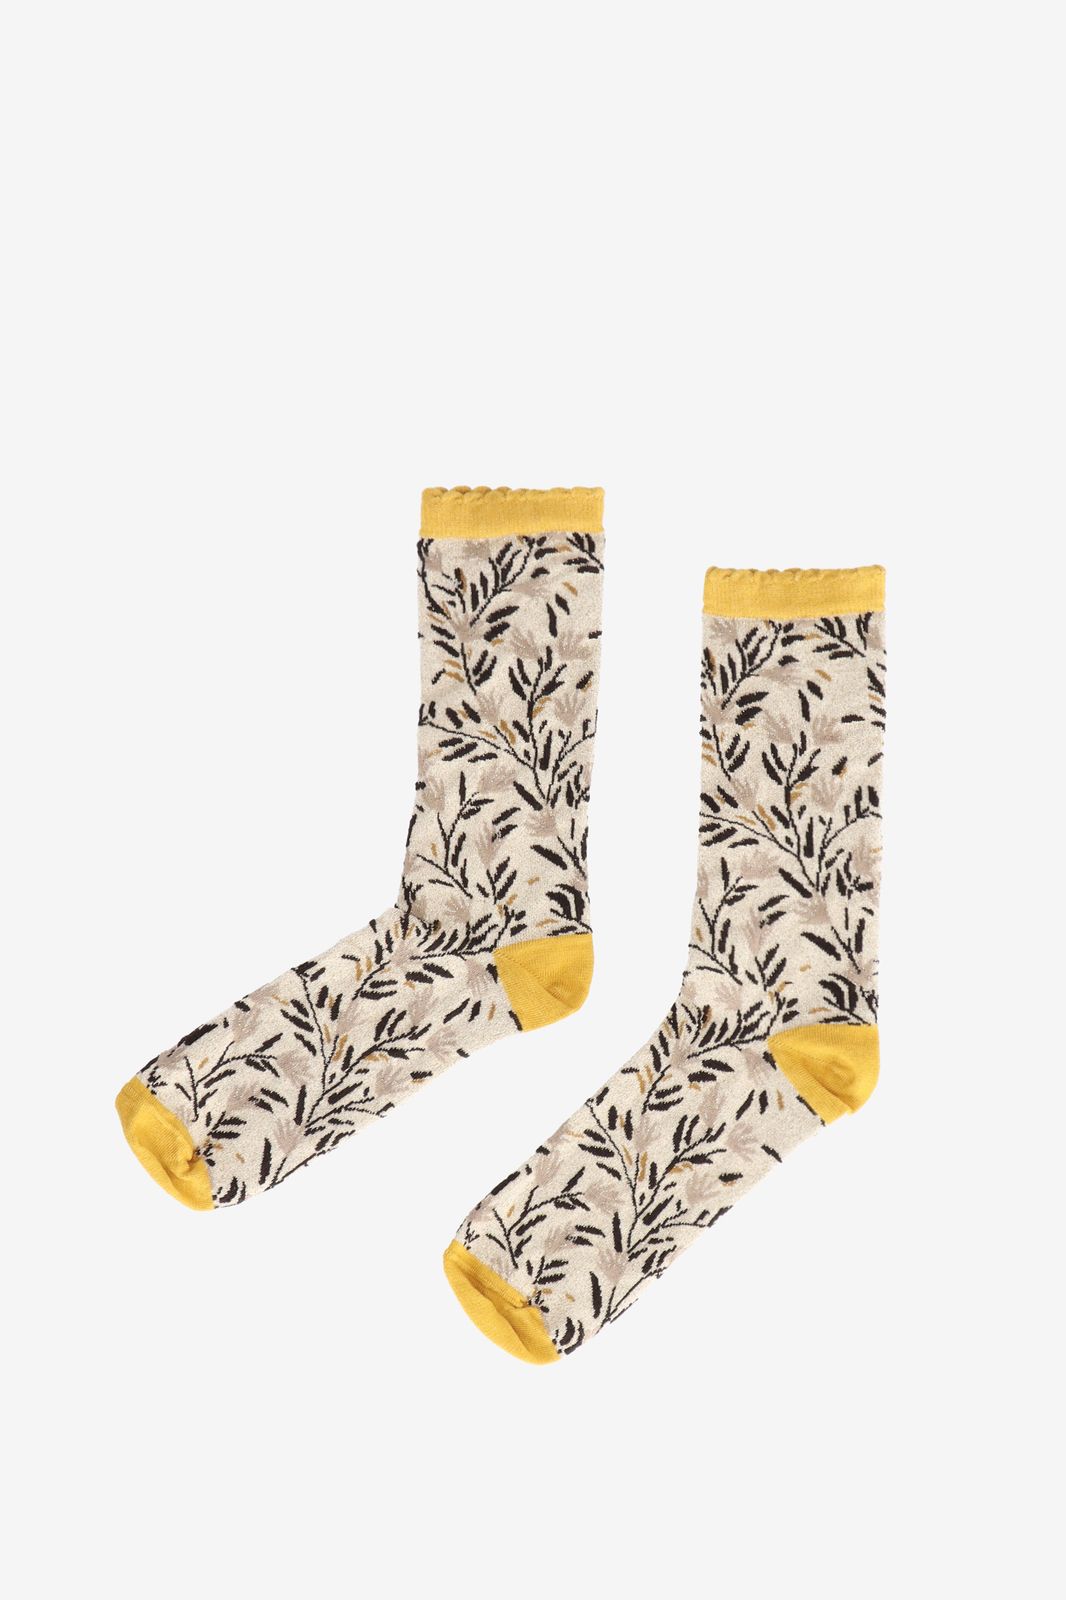 Socken mit Print - beige/gelb